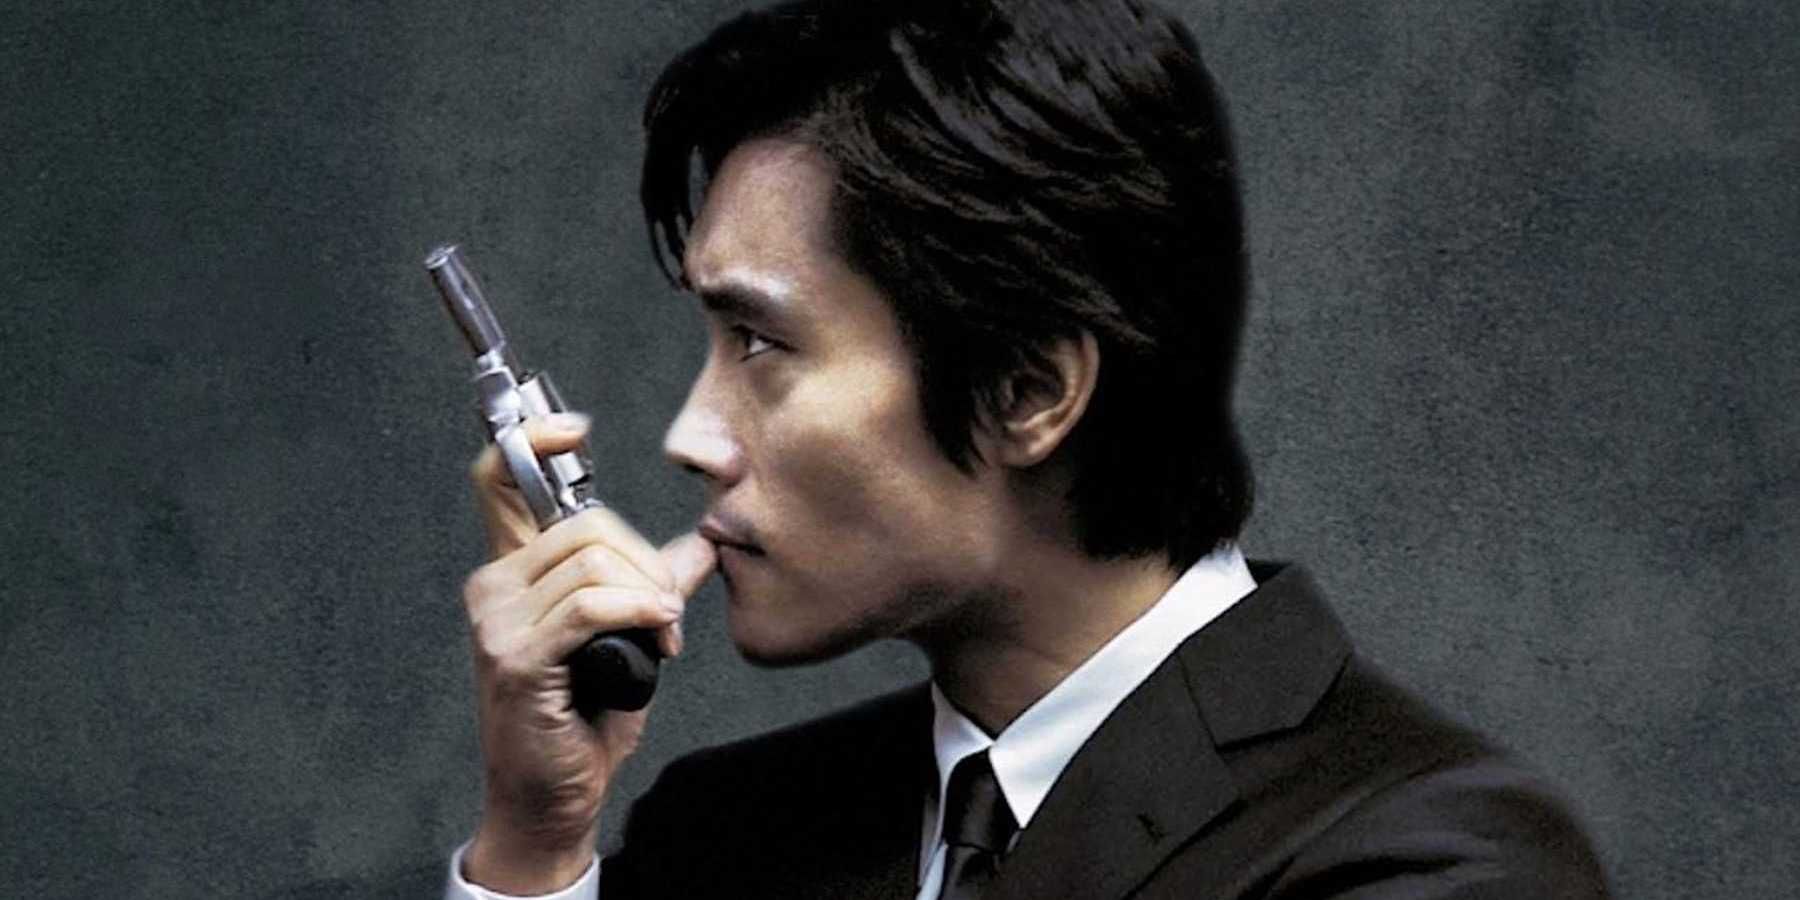 Sun-woo segura um revólver na frente do rosto em uma imagem promocional de A Bittersweet Life